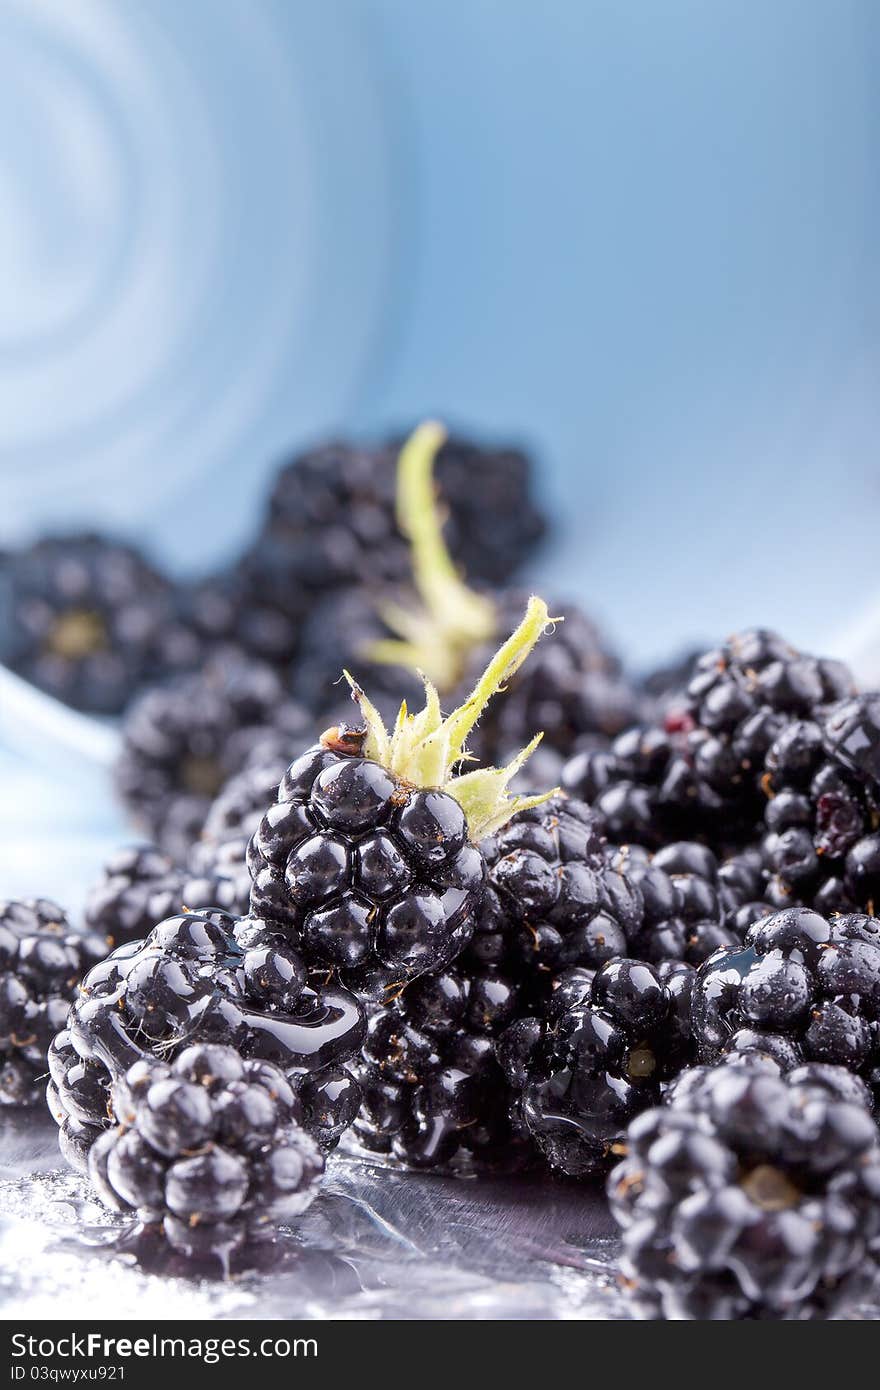 Studio-shot of blackberries in a bucket.